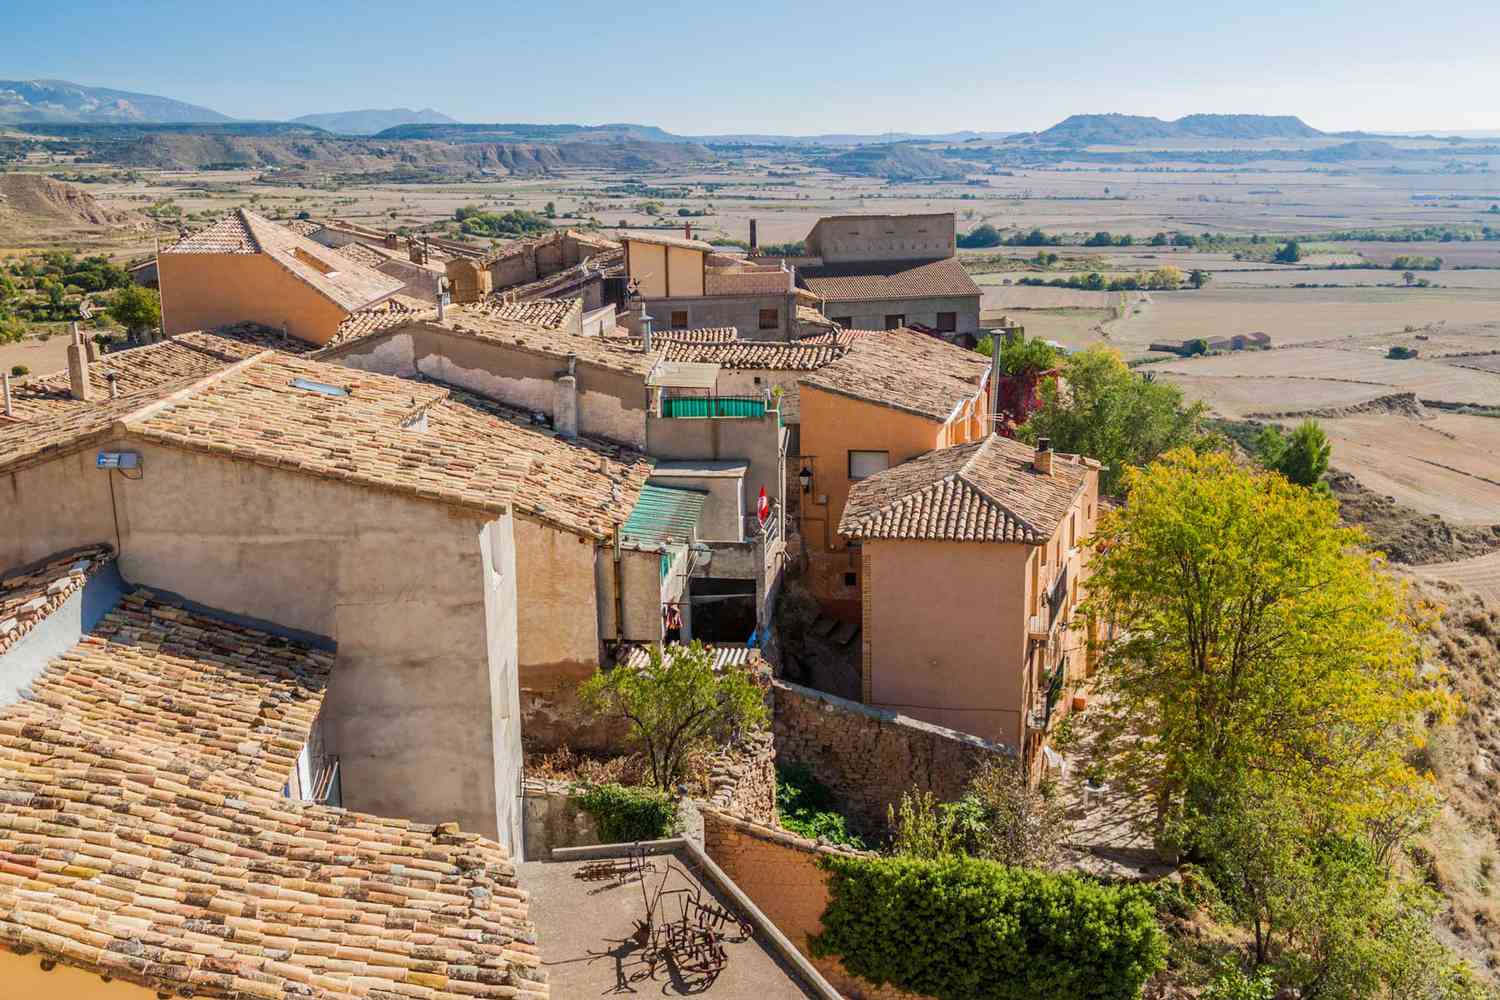 Vieilles maisons dans le village de Bolea, province d'Aragon, Pyrénées espagnoles